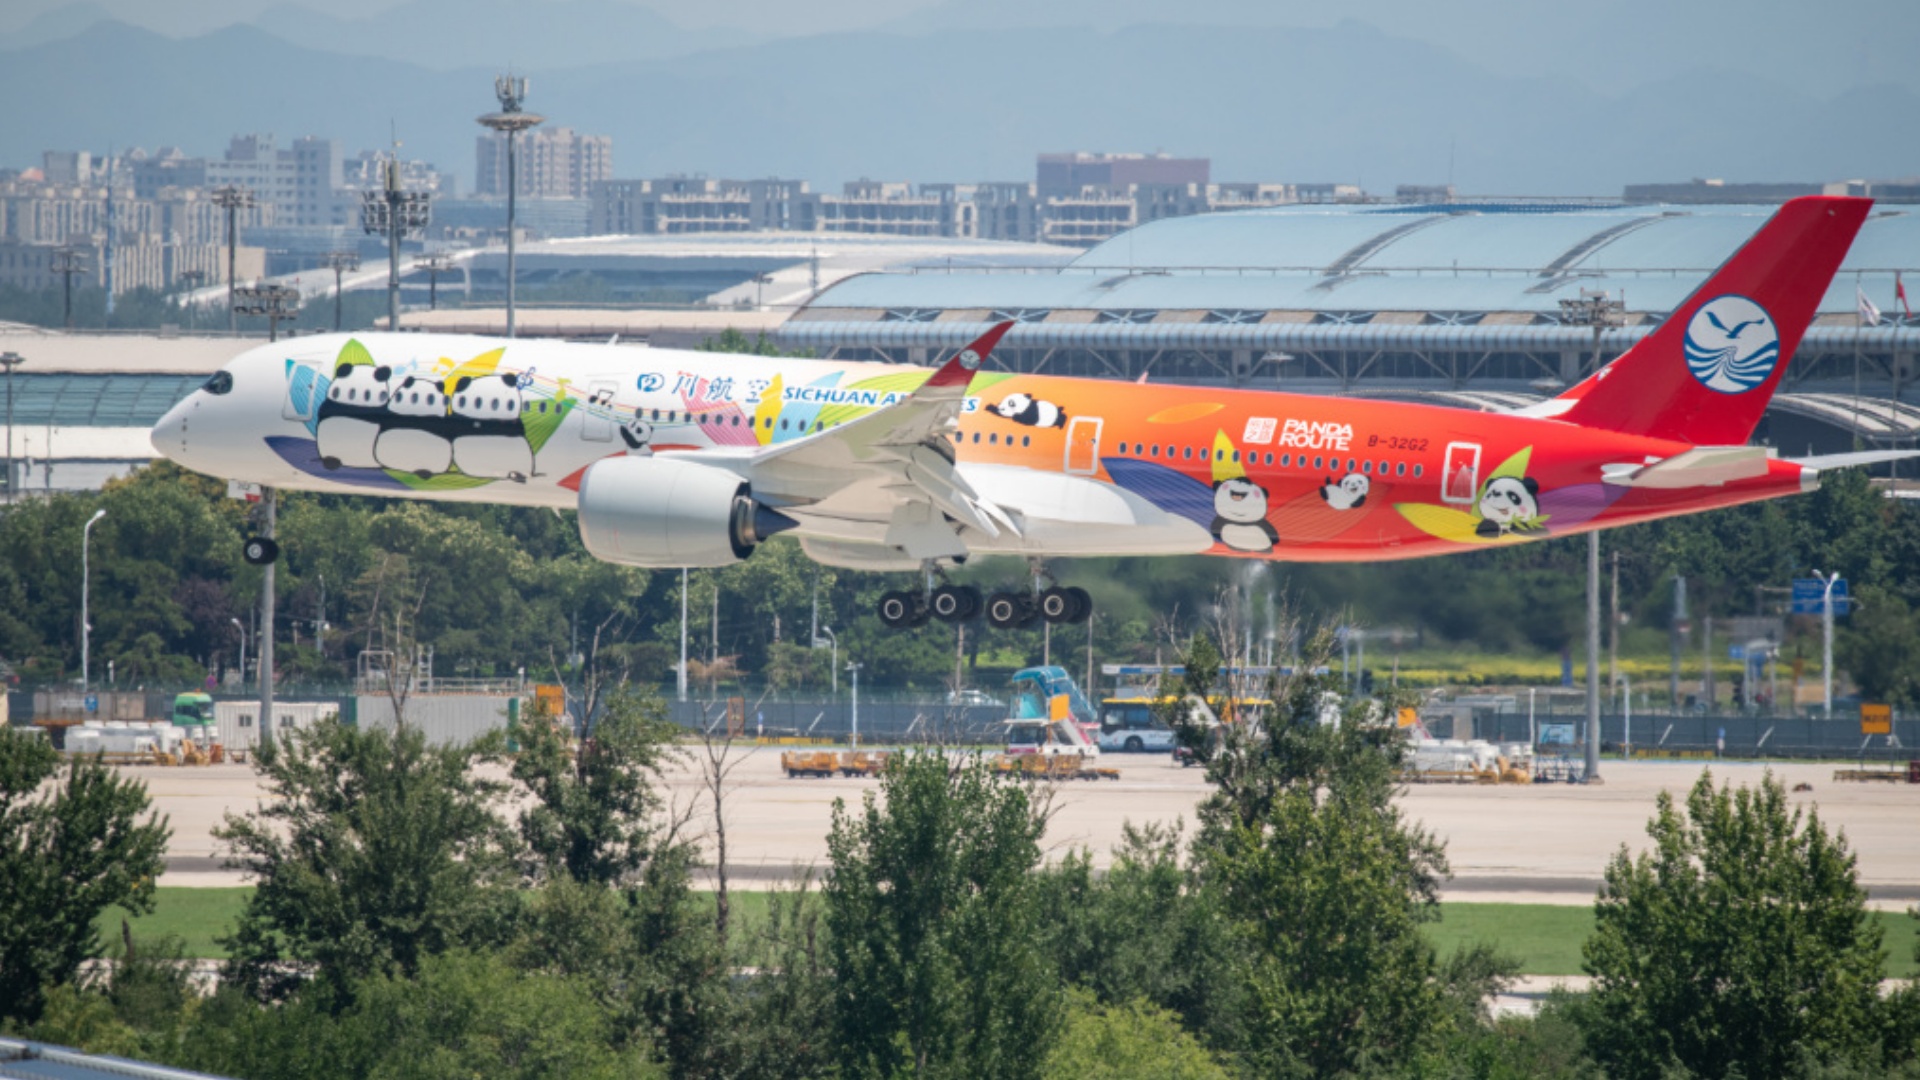 川航“熊貓之路”彩繪客機飛抵首都機場